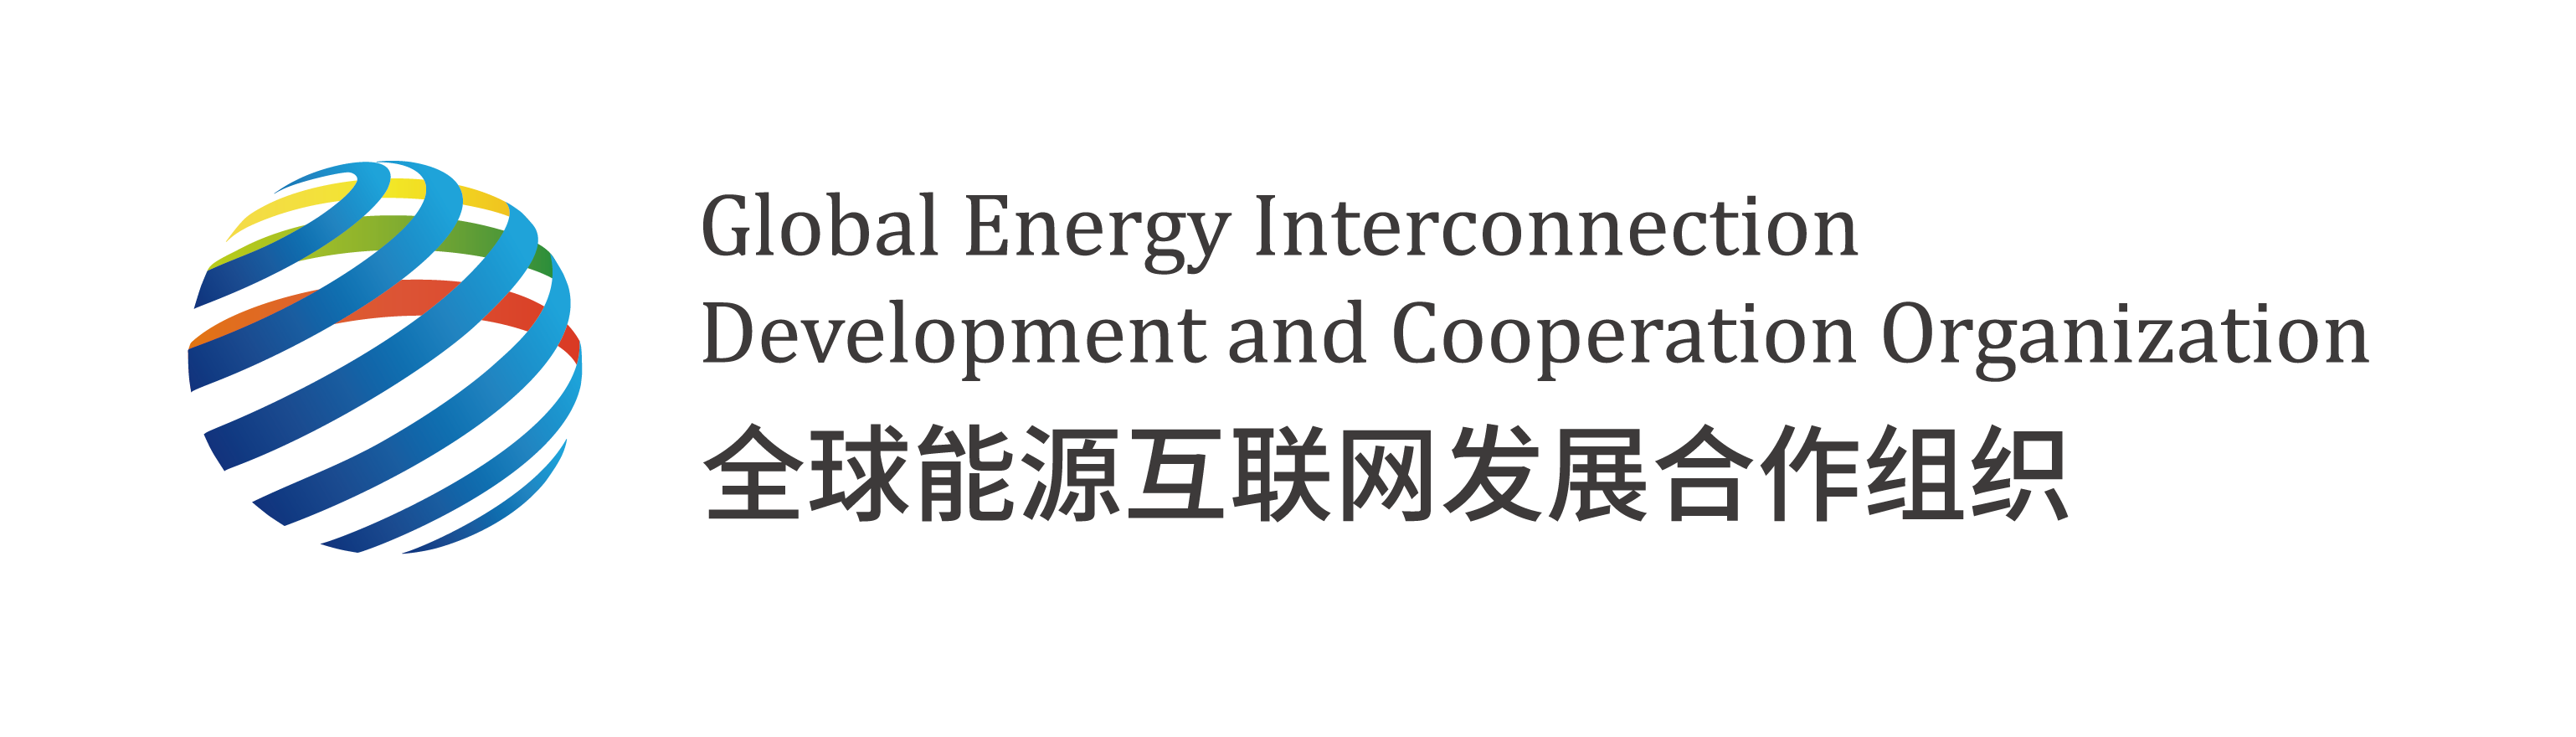 Организация глобального объединения энергосистем, развития и сотрудничества (GEIDCO)